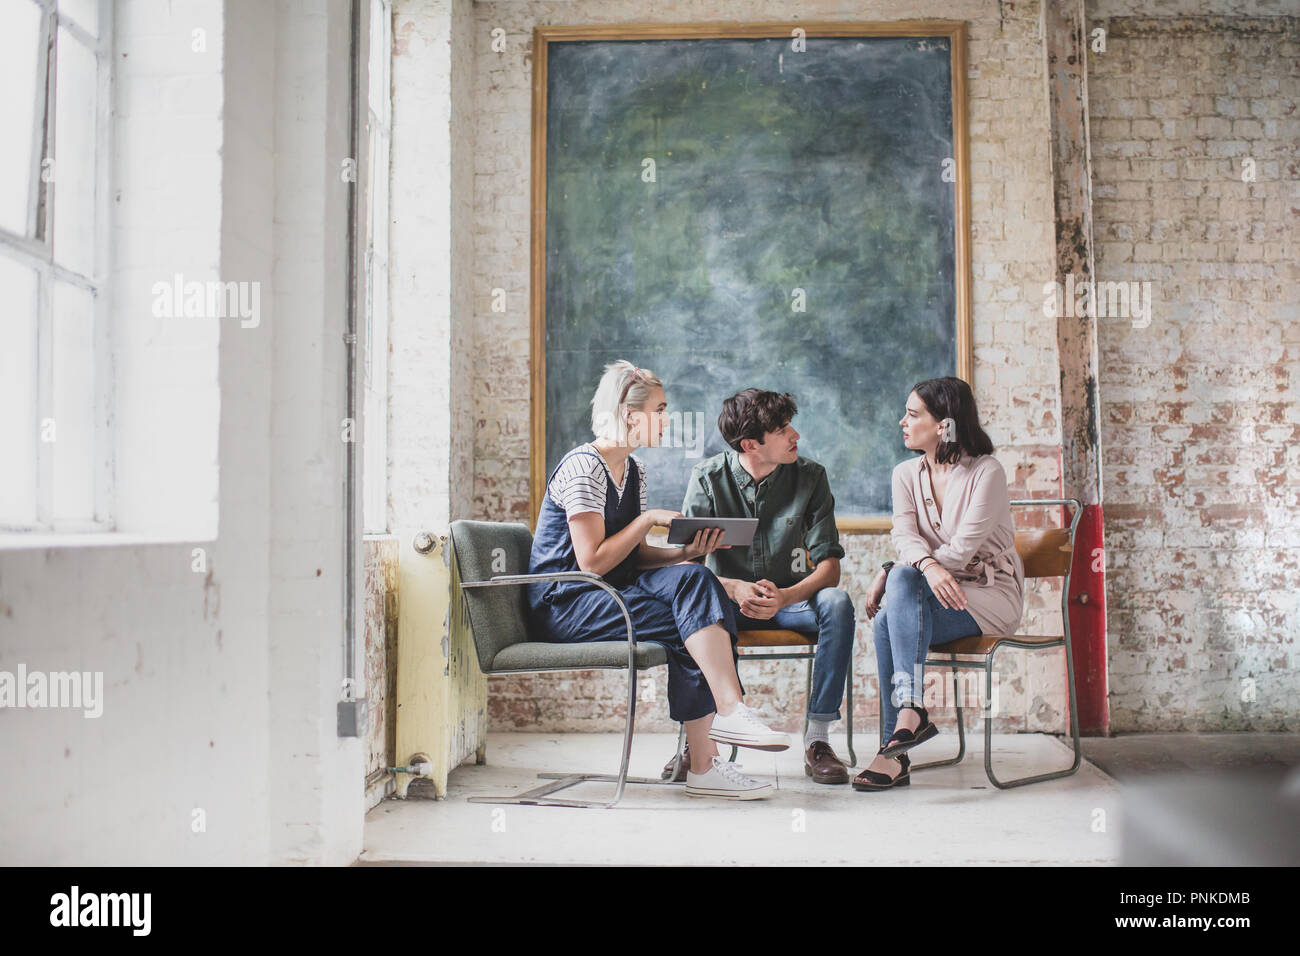 Les jeunes adultes lors d'une rencontre dans un studio de création avec une tablette numérique Banque D'Images